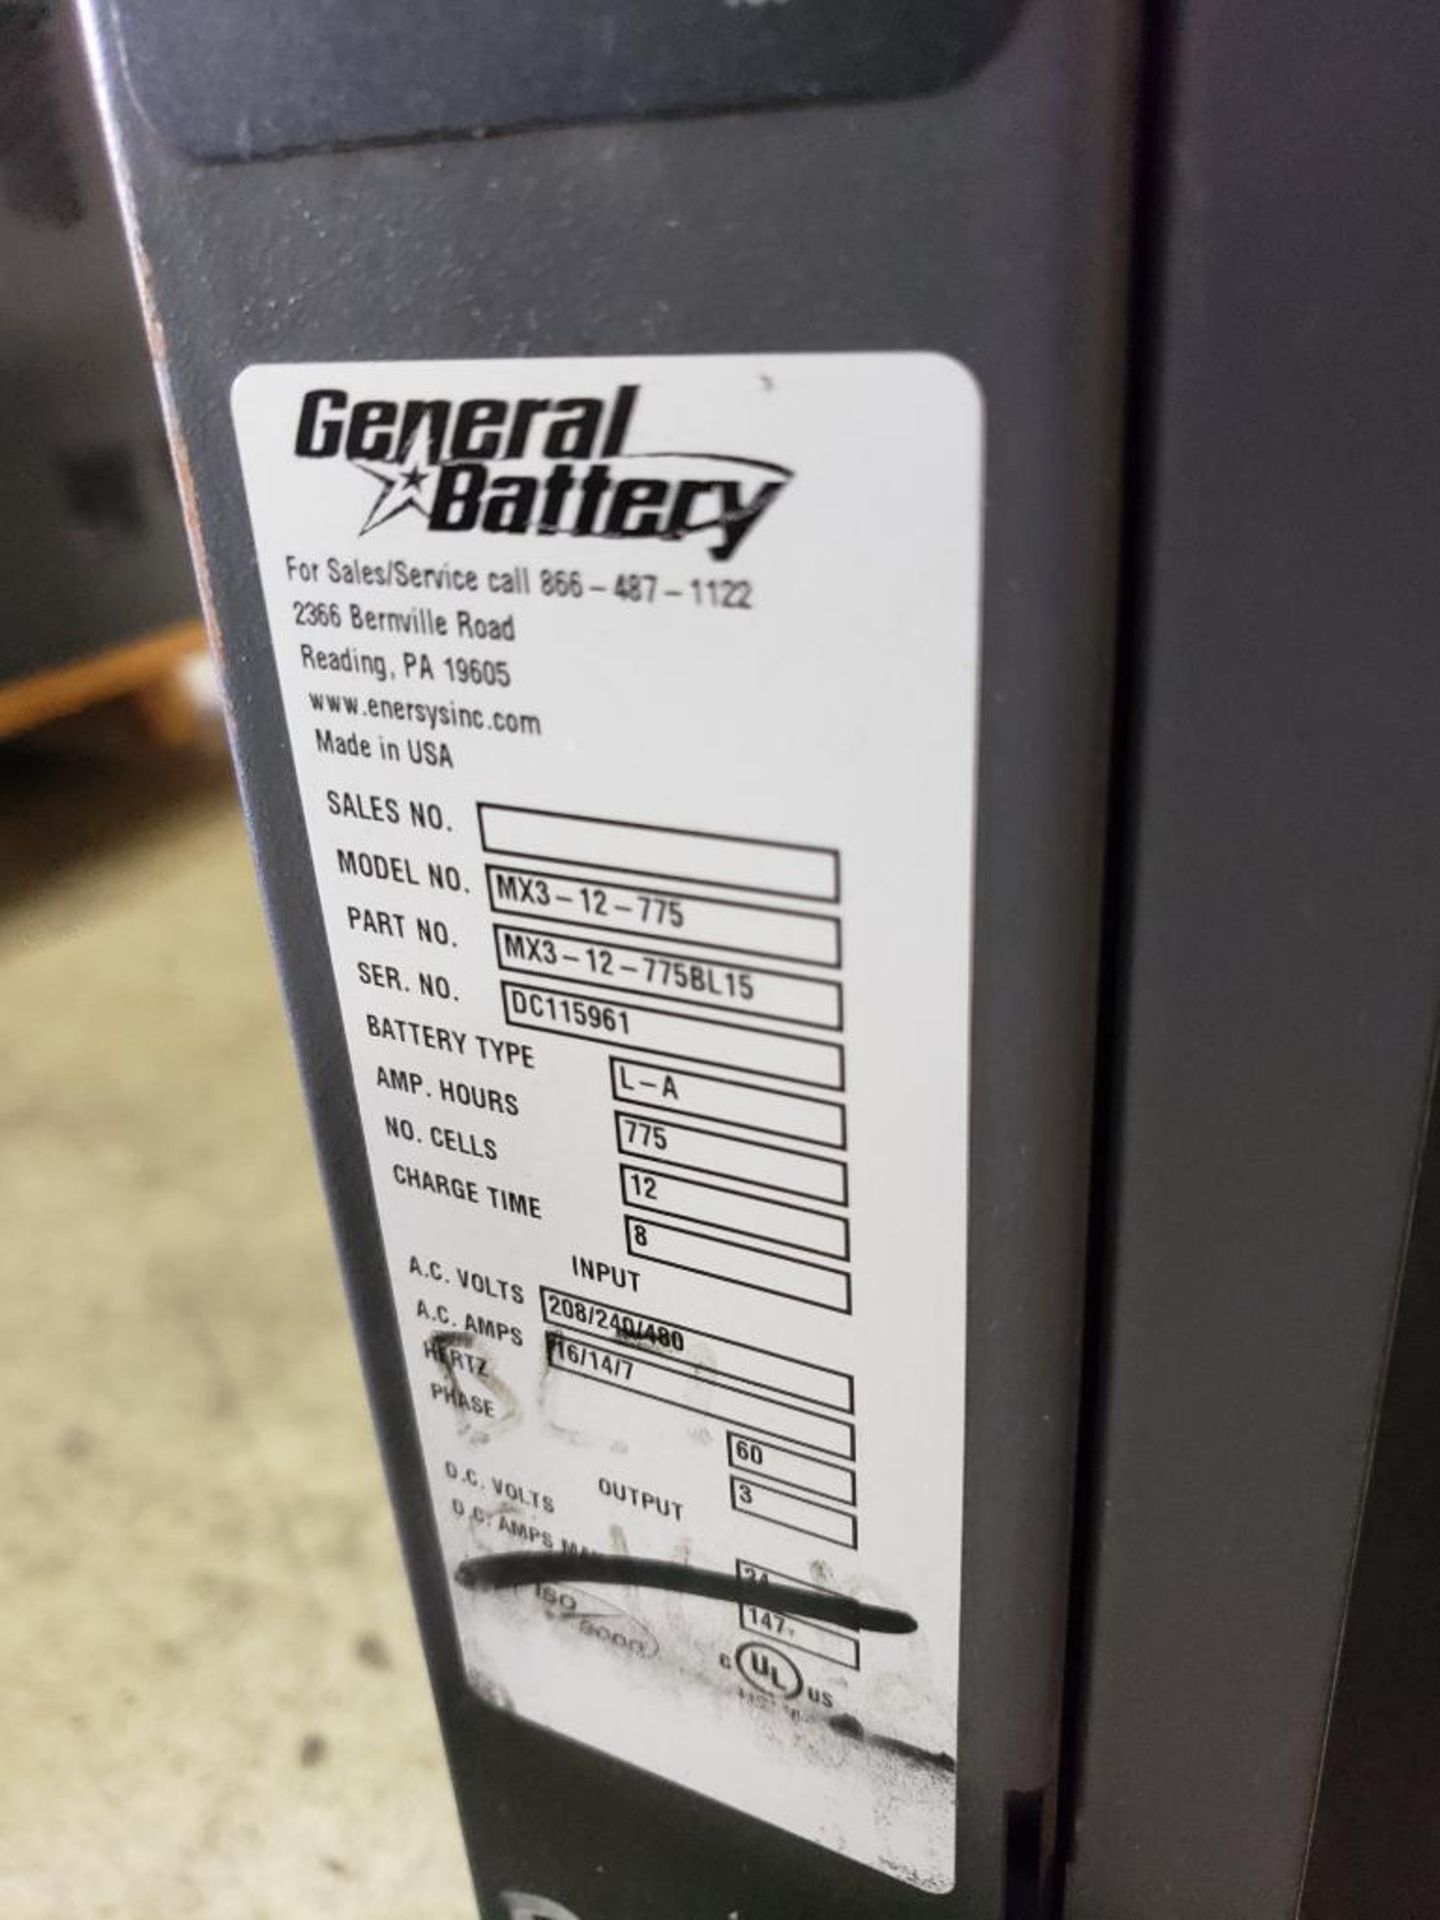 24 Volt General Battery charger. MX3-12-775BL15, 775AH. 3-phase, 208/240/480V. - Image 4 of 6